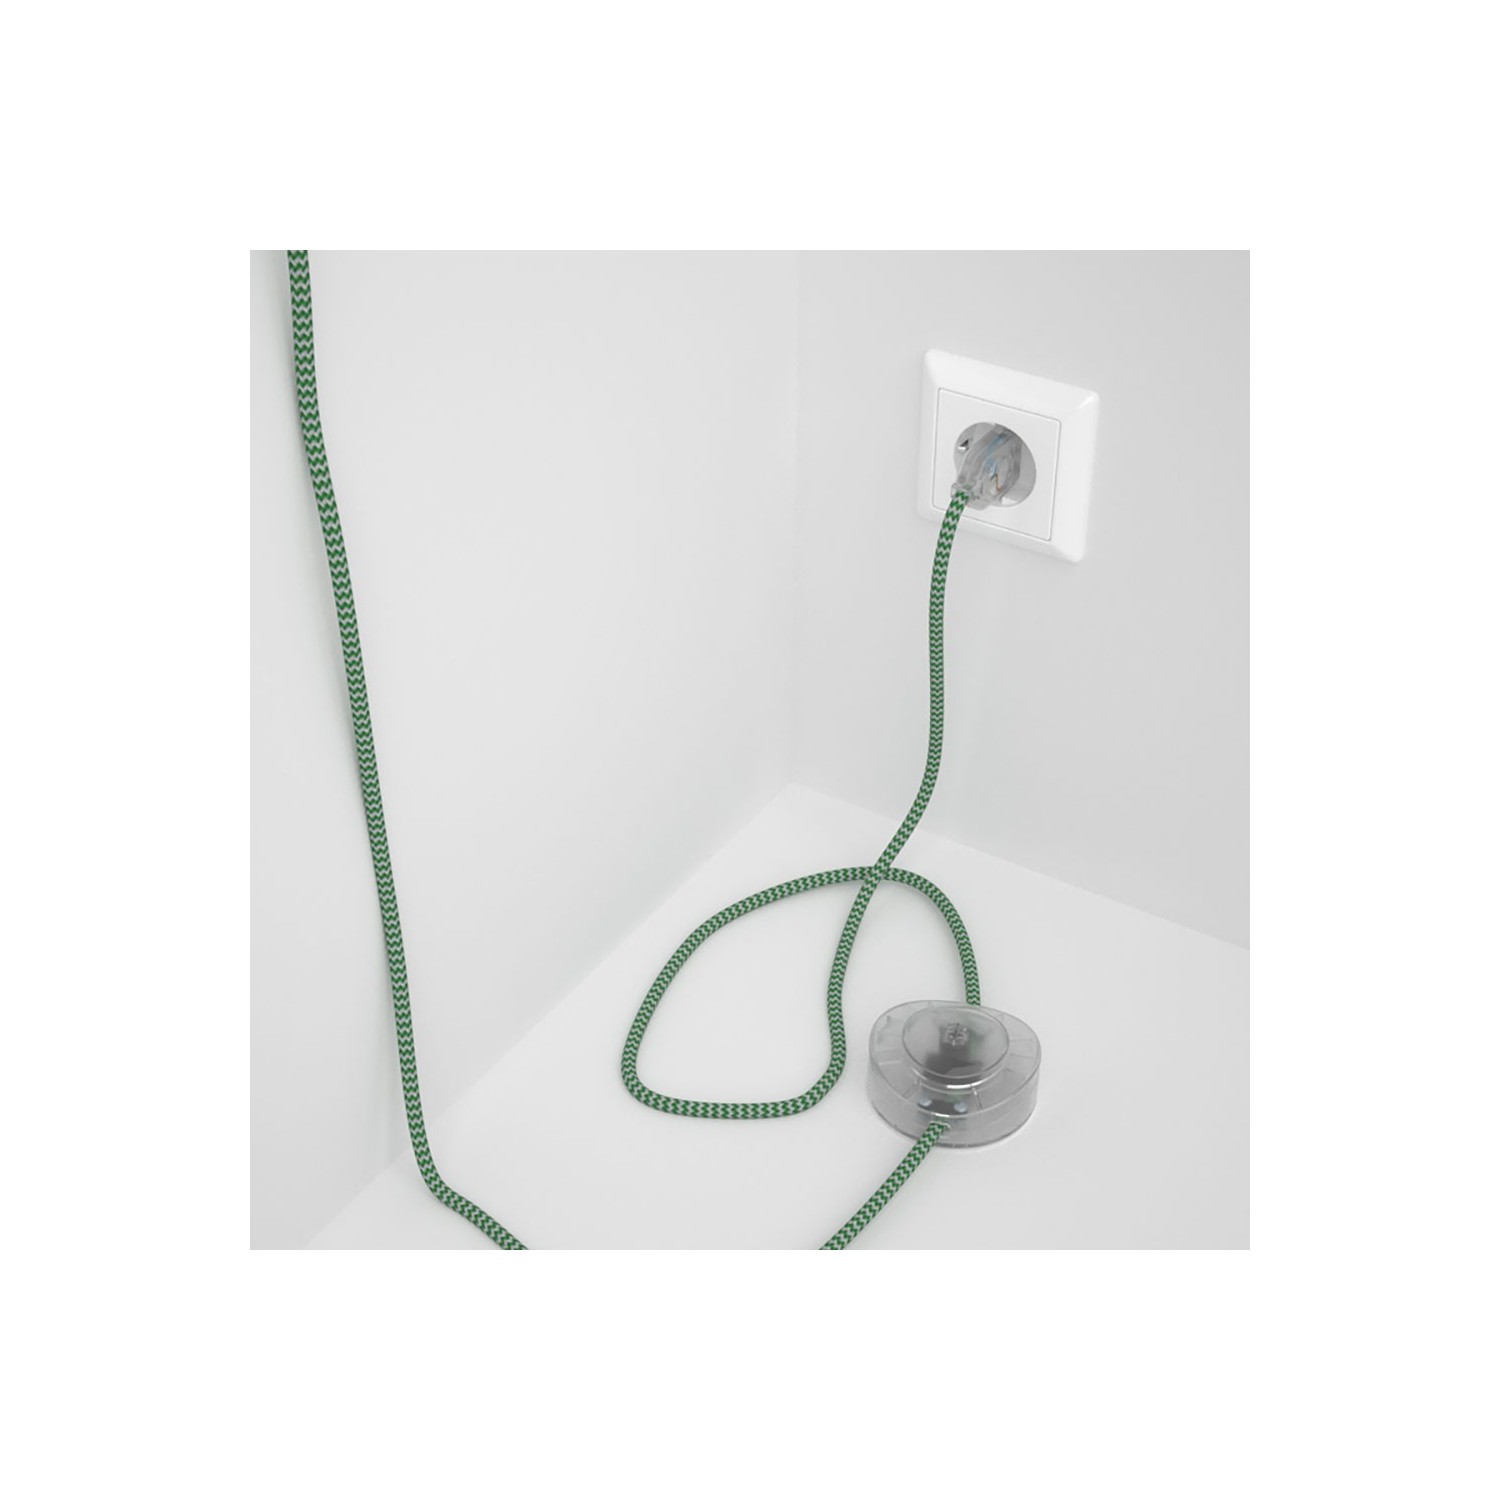 Napájací kábel pre podlahovú lampu, RZ06 Cik - cak zelený hodvábny 3 m. Vyberte si farbu zástrčky a vypínača.